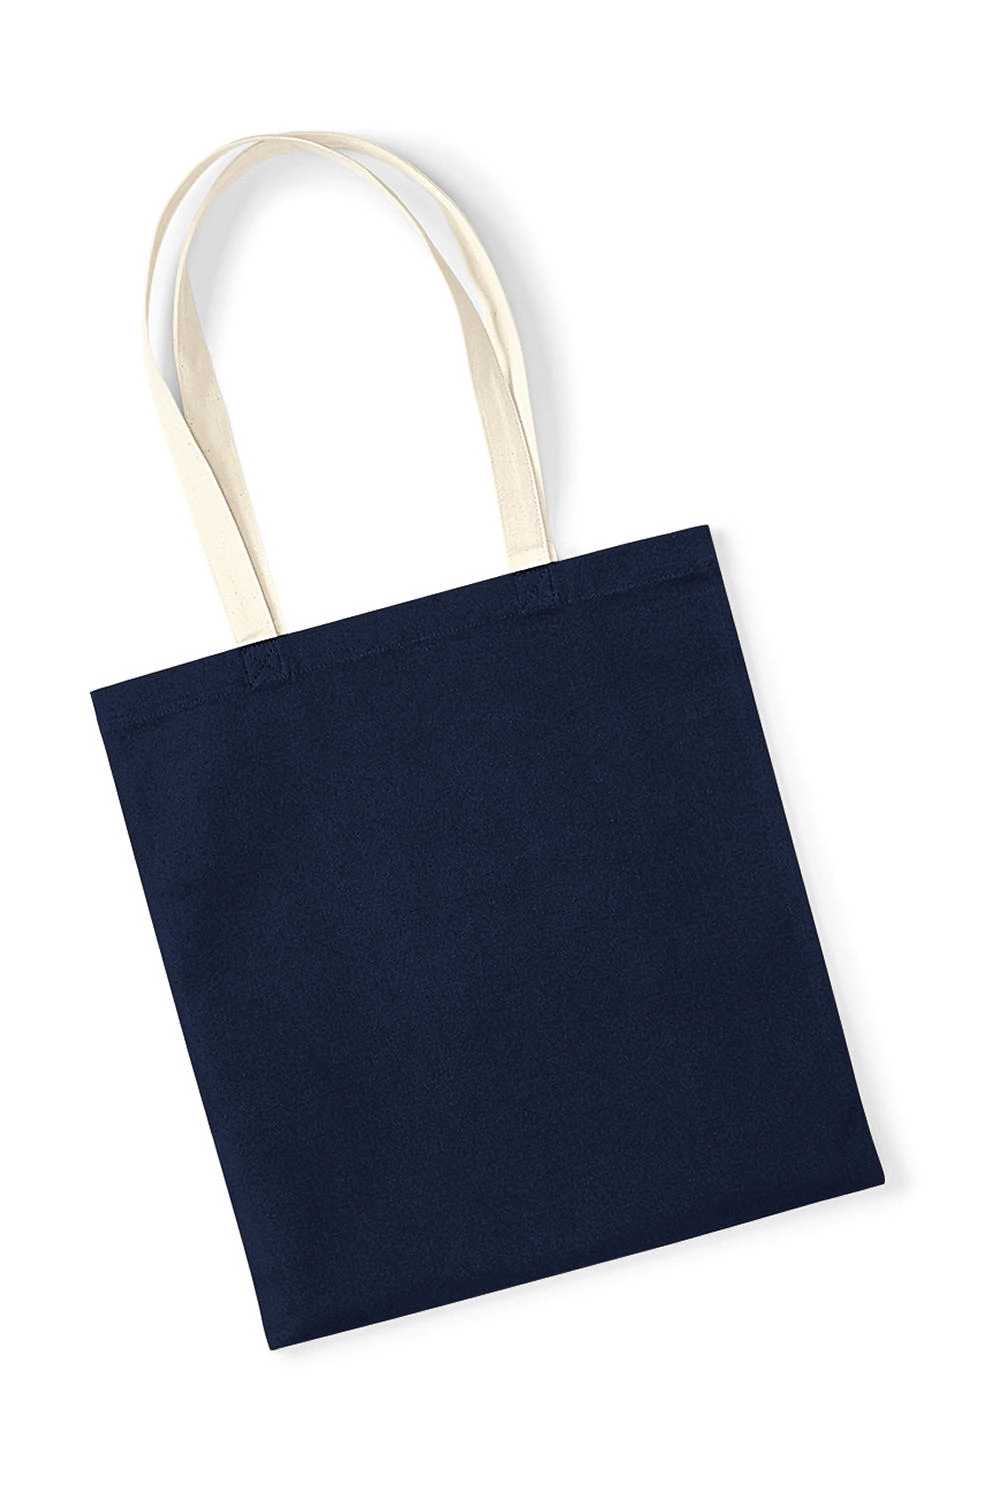 EarthAware™ Organic Bag for Life - Contrast Handle zum Besticken und Bedrucken in der Farbe French Navy/Natural mit Ihren Logo, Schriftzug oder Motiv.